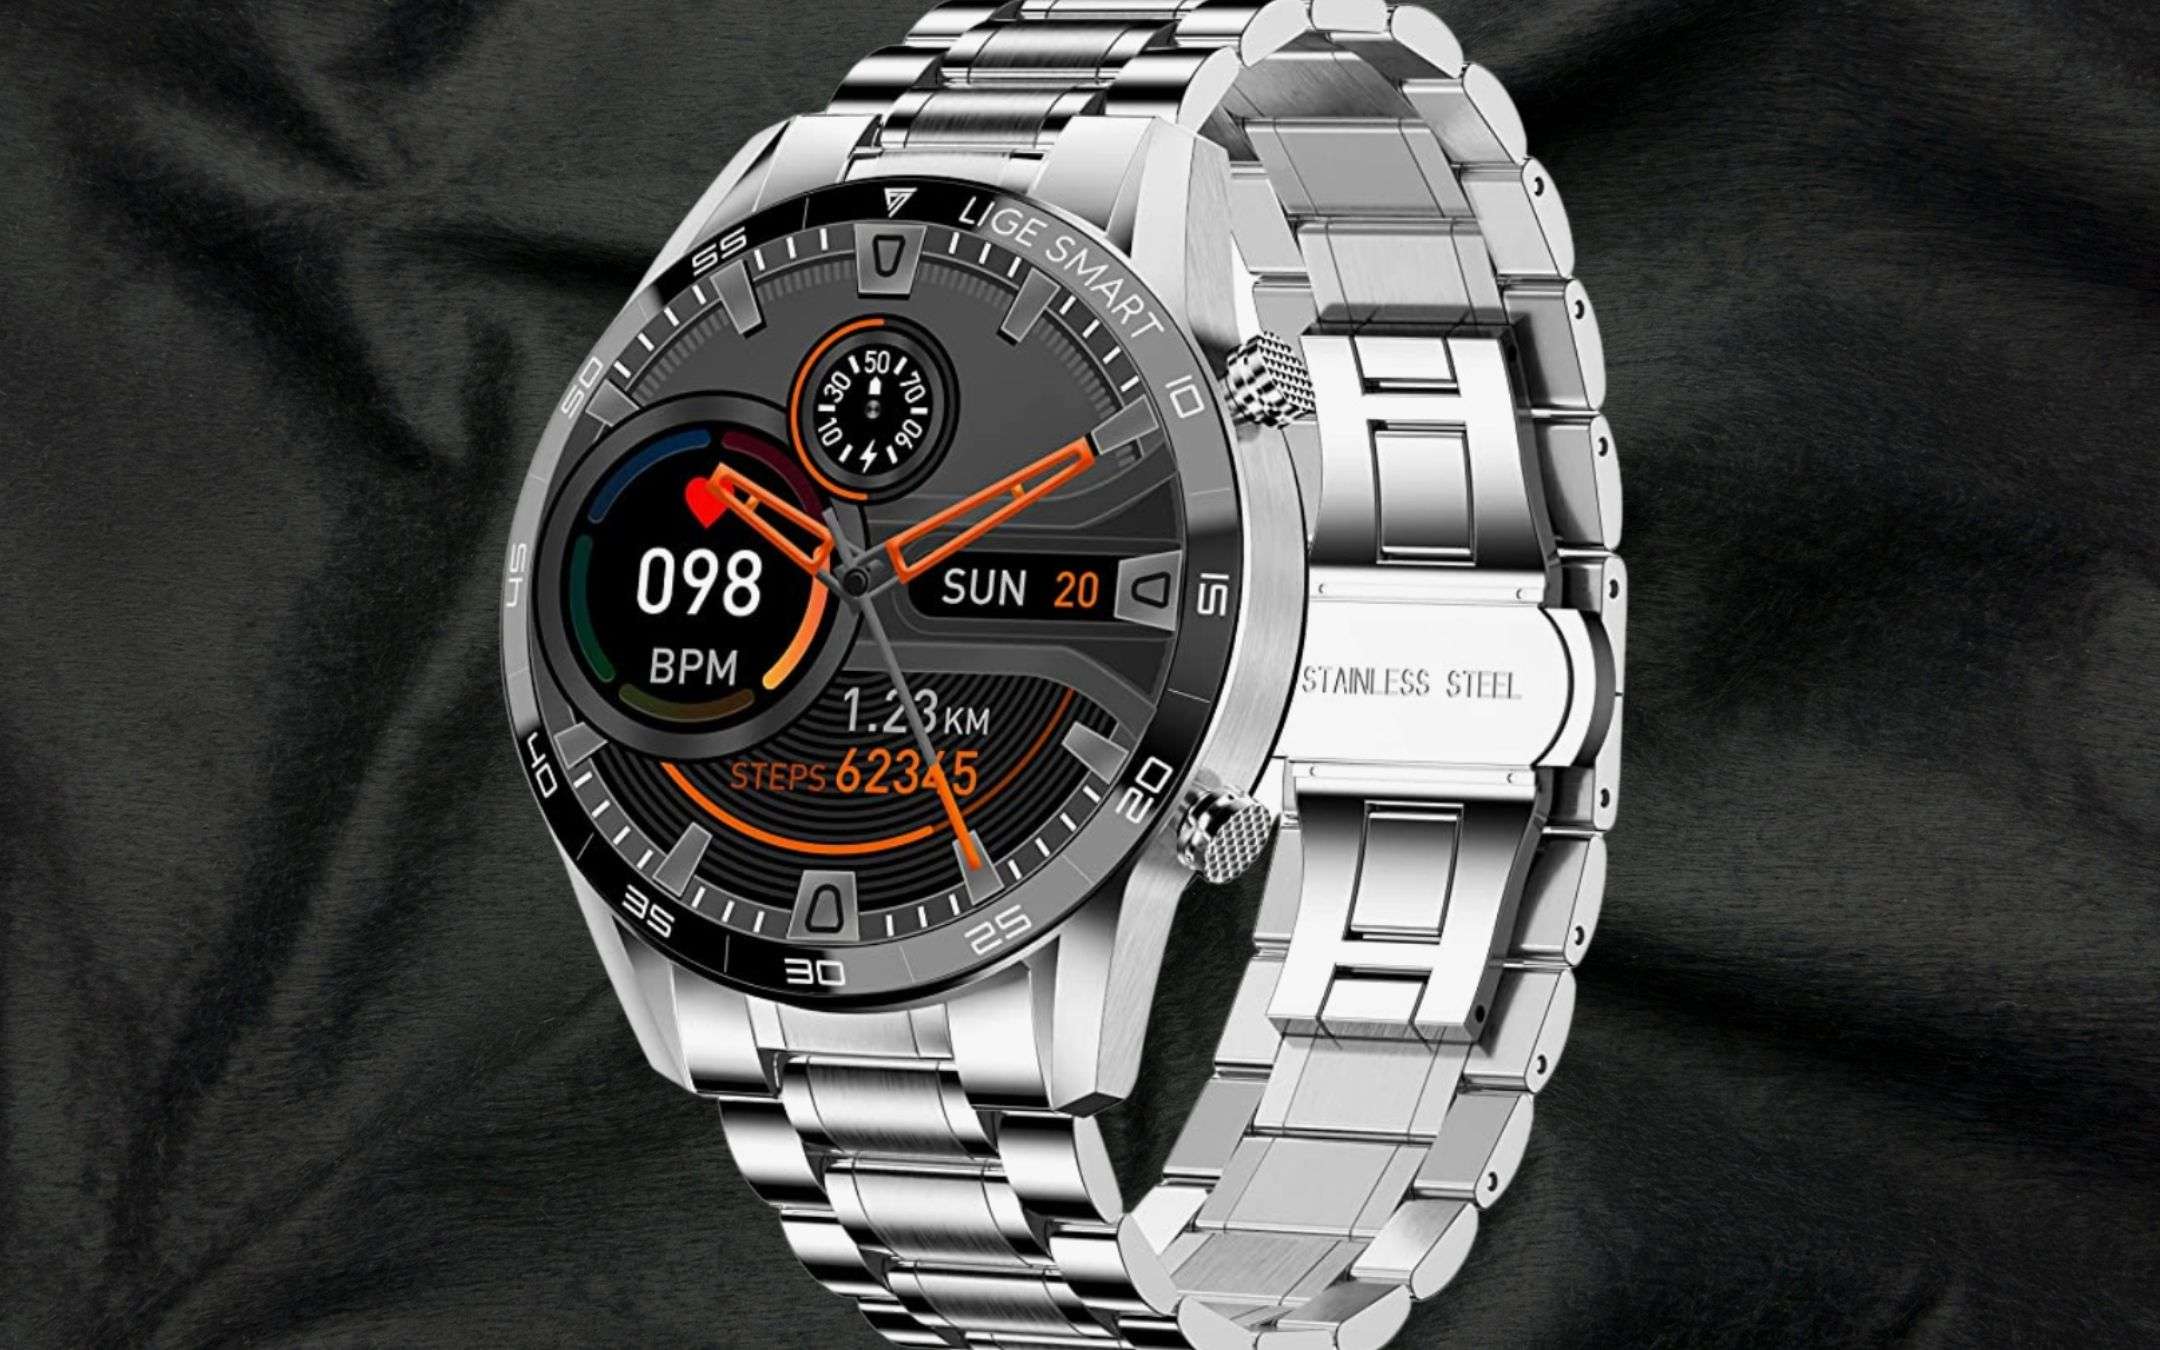 Su Amazon il LUSSO costa poco: 49€ per lo smartwatch in acciaio